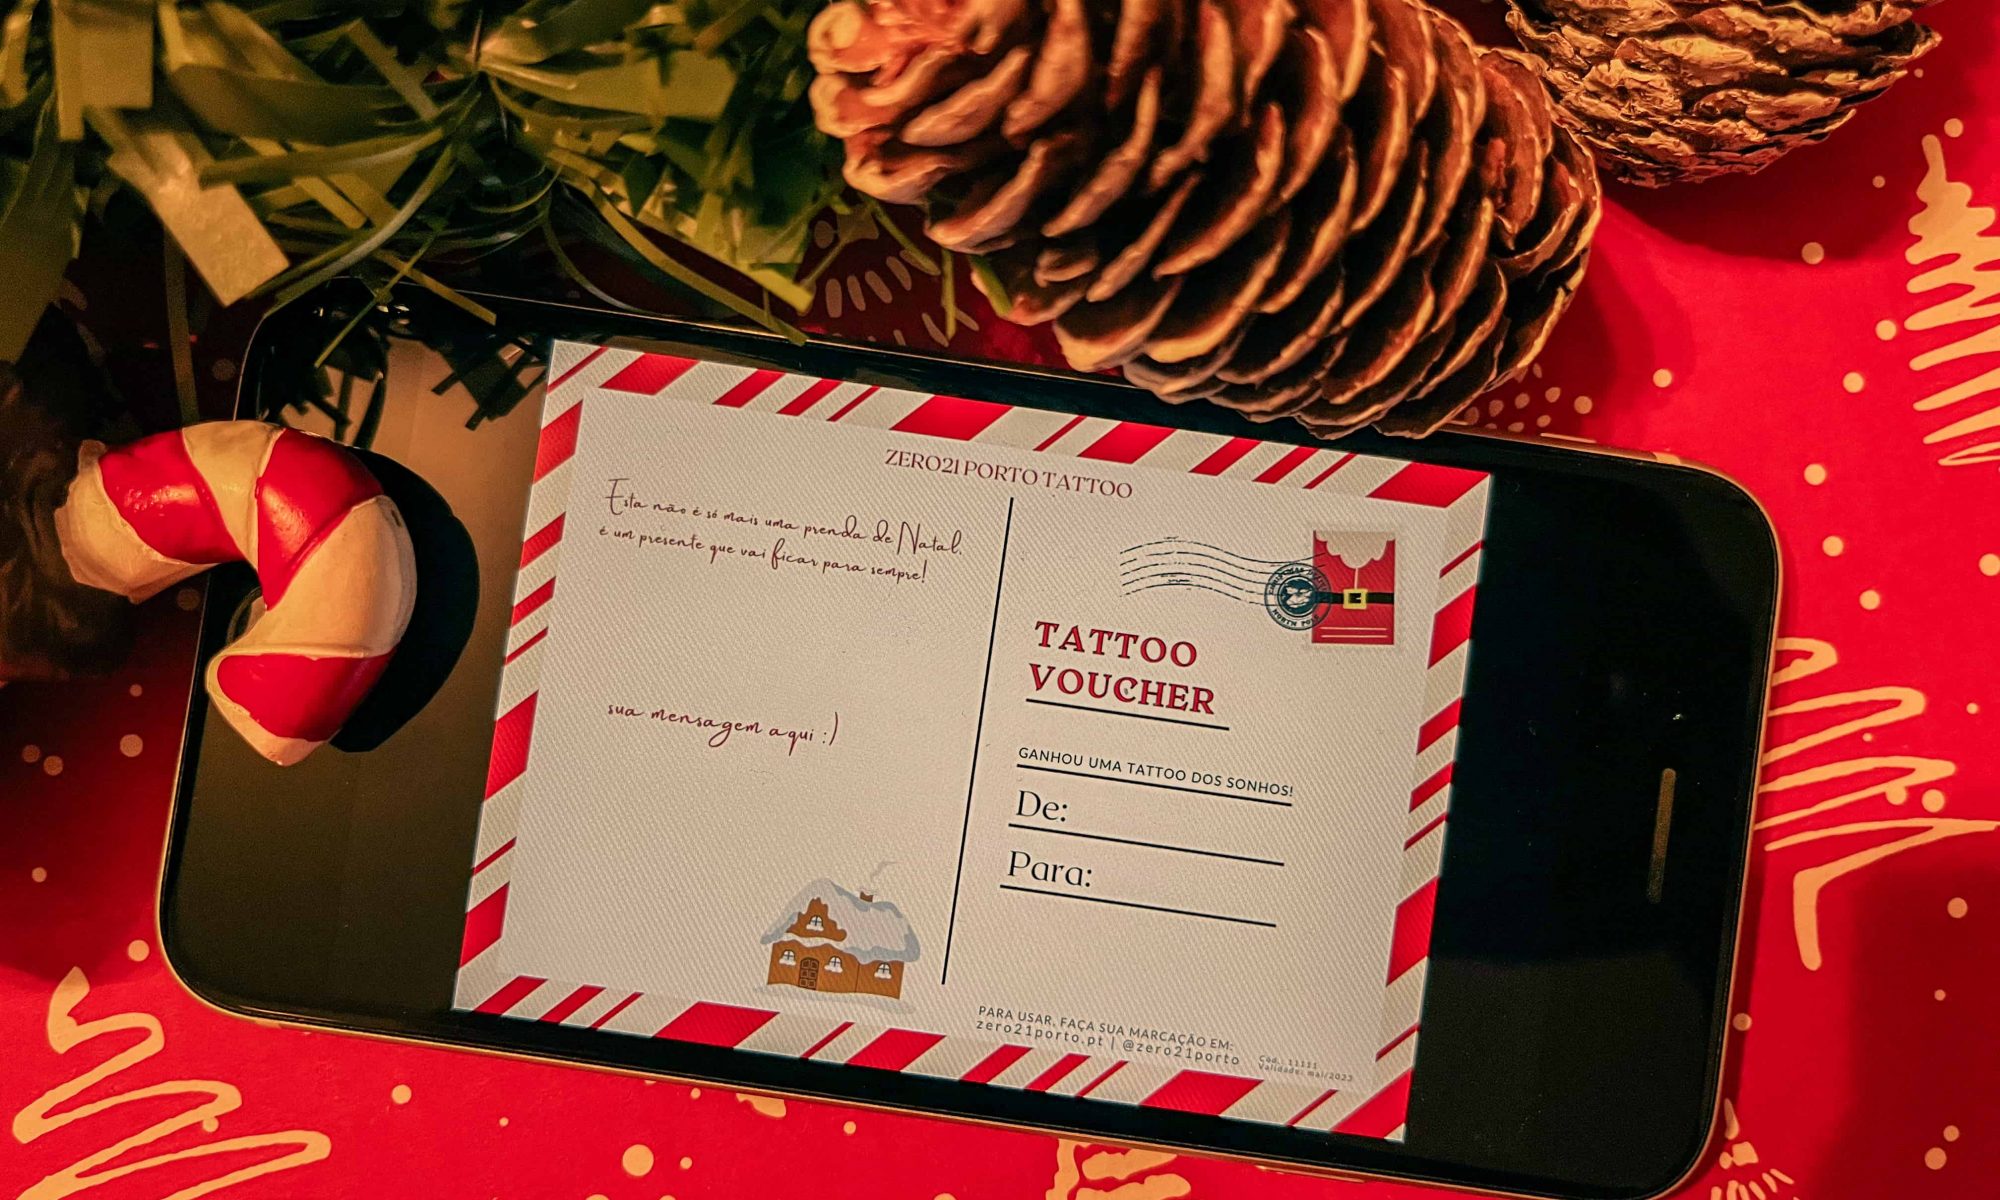 tattoo voucher de Natal